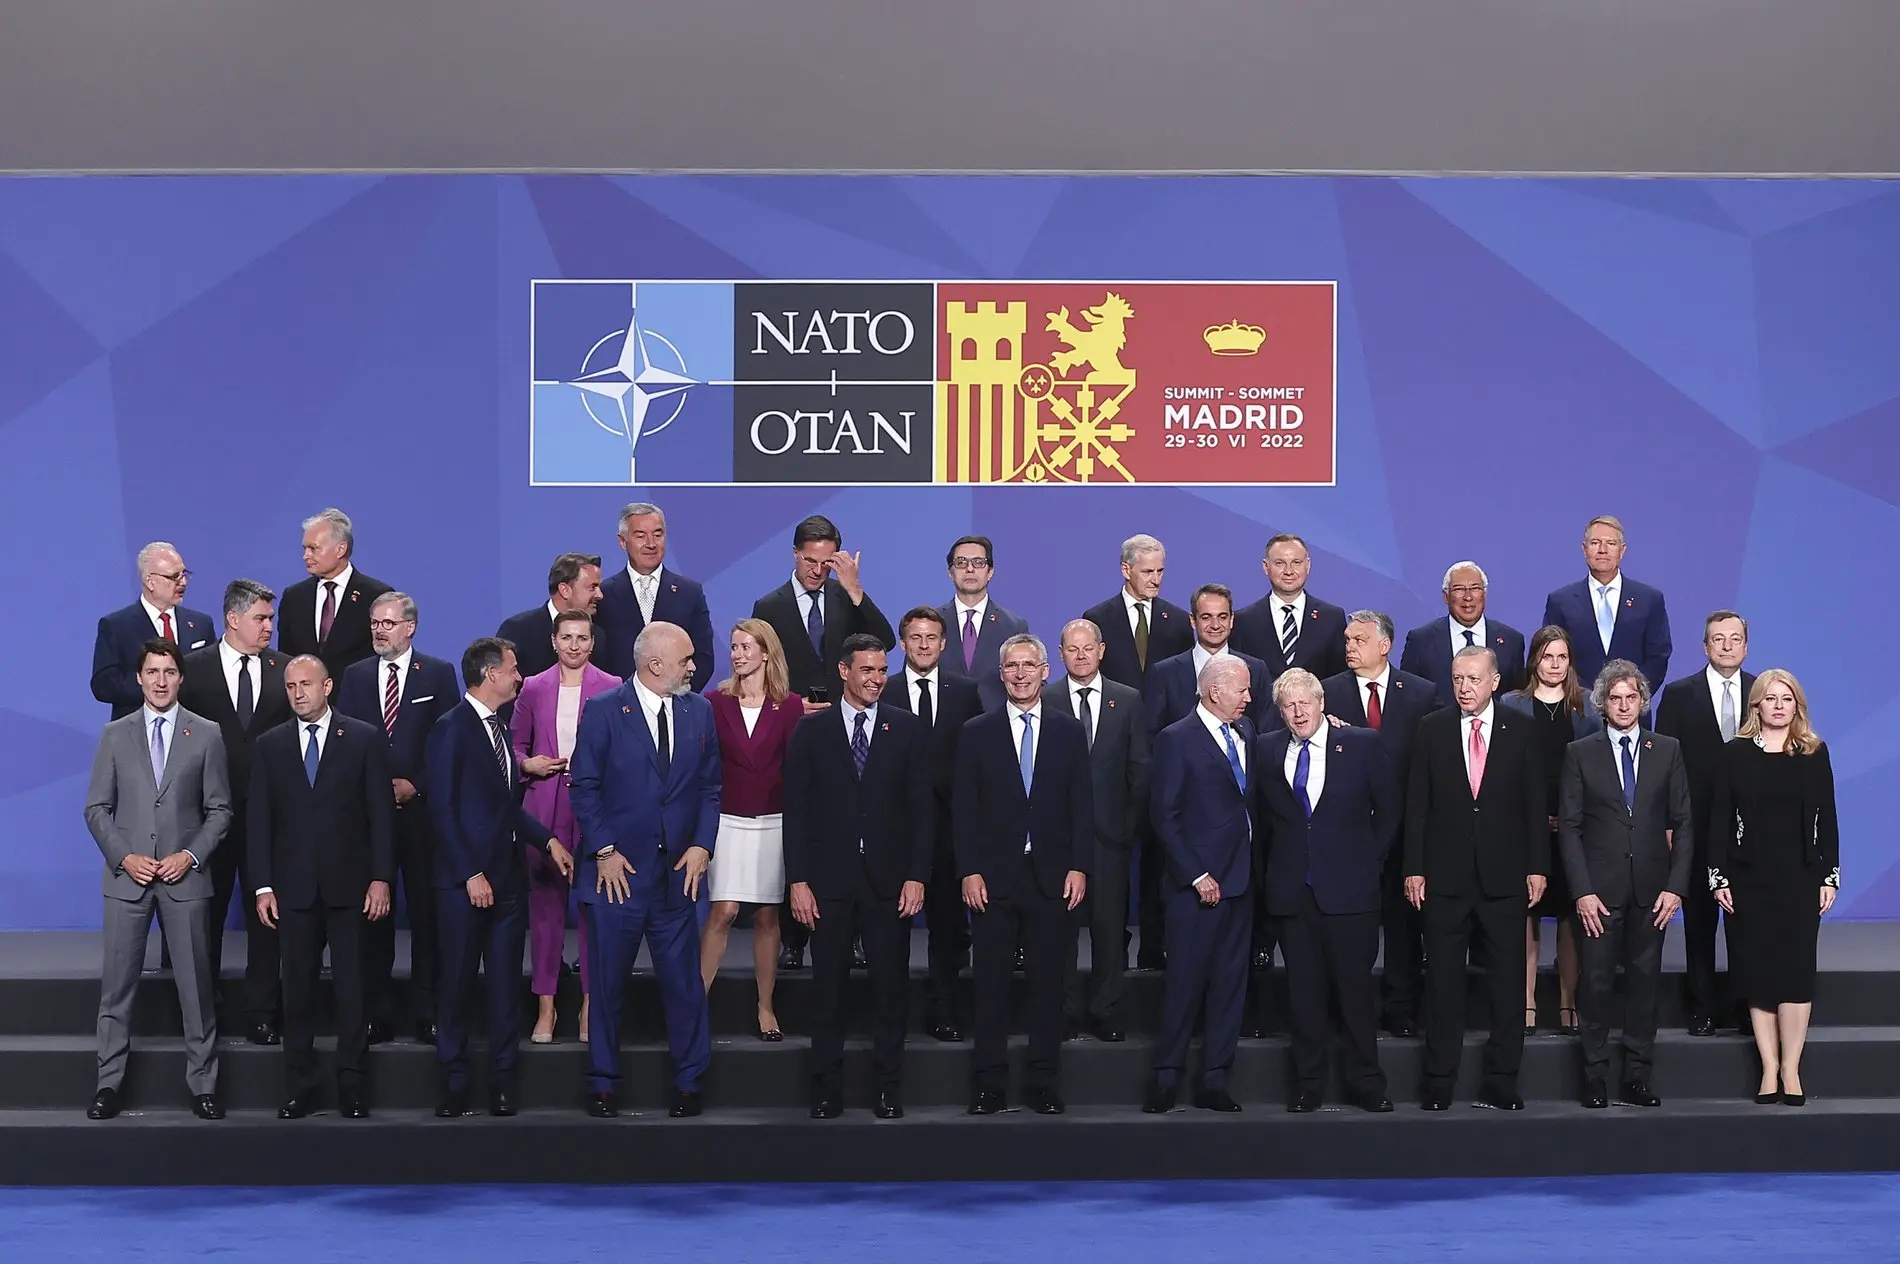 Gruppenfoto der NATO-Staats- und Regierungschefs